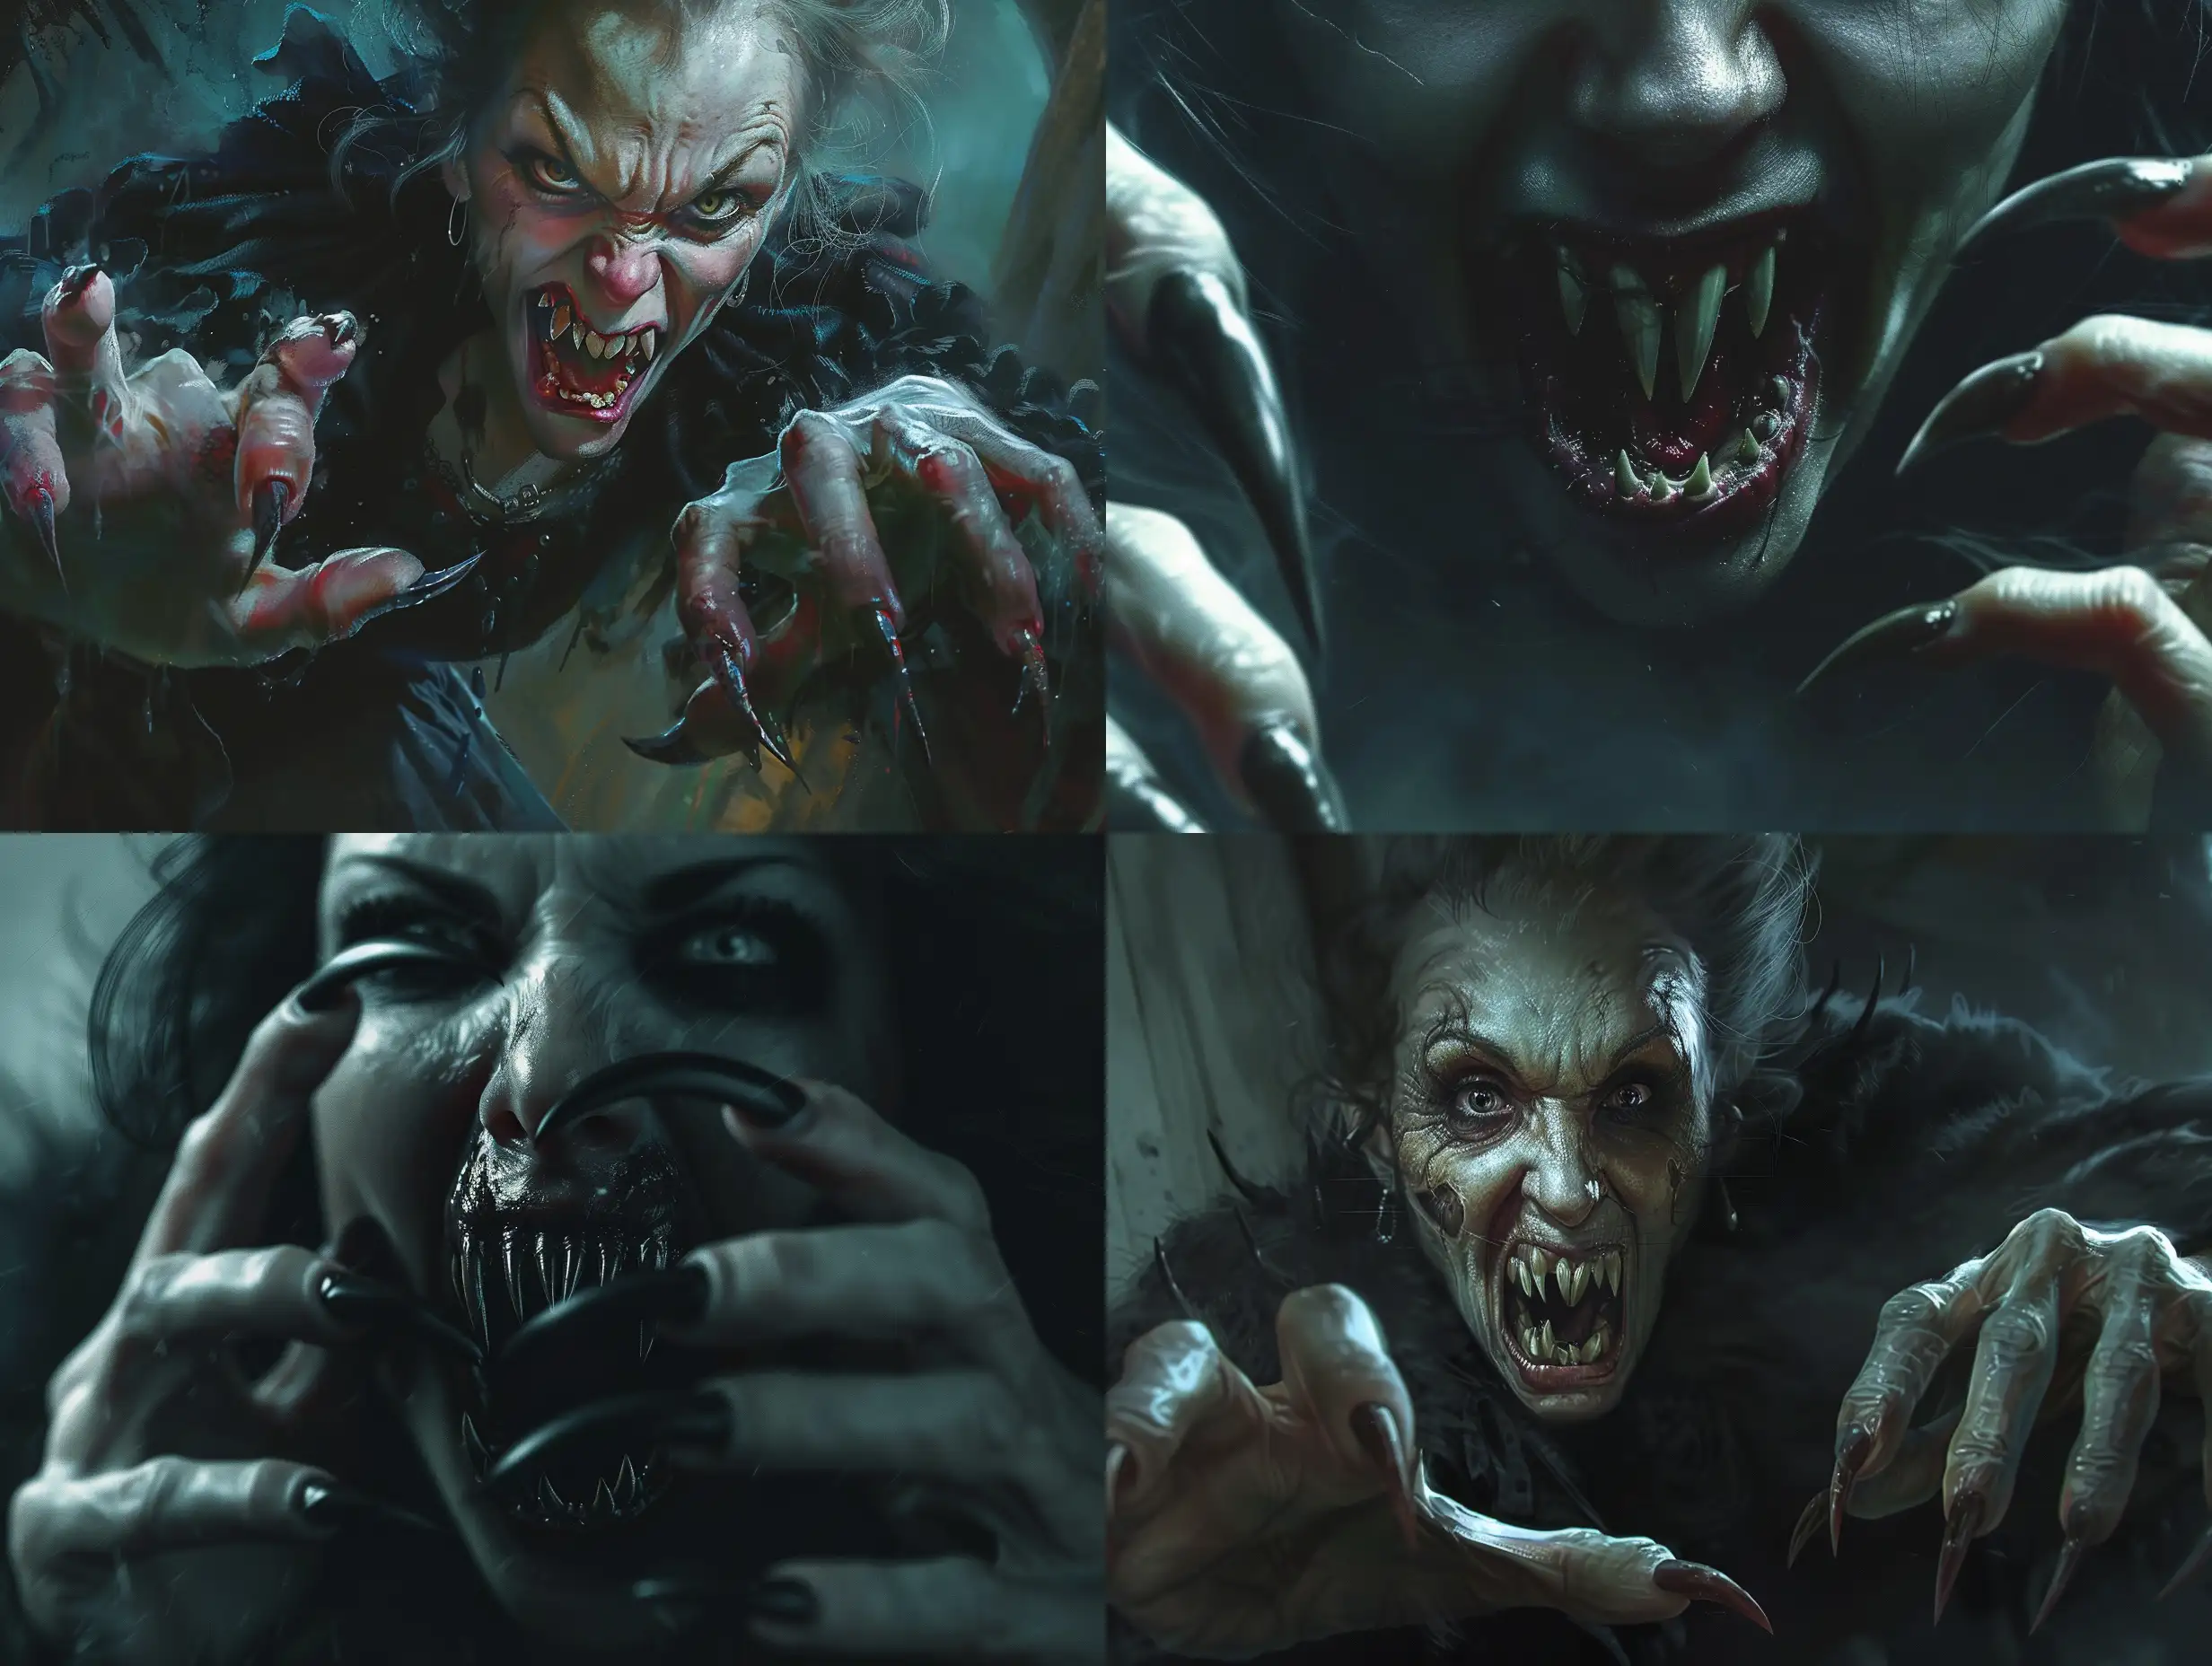 HyperRealistic-Monstrous-Female-Vampire-Attack-Scene